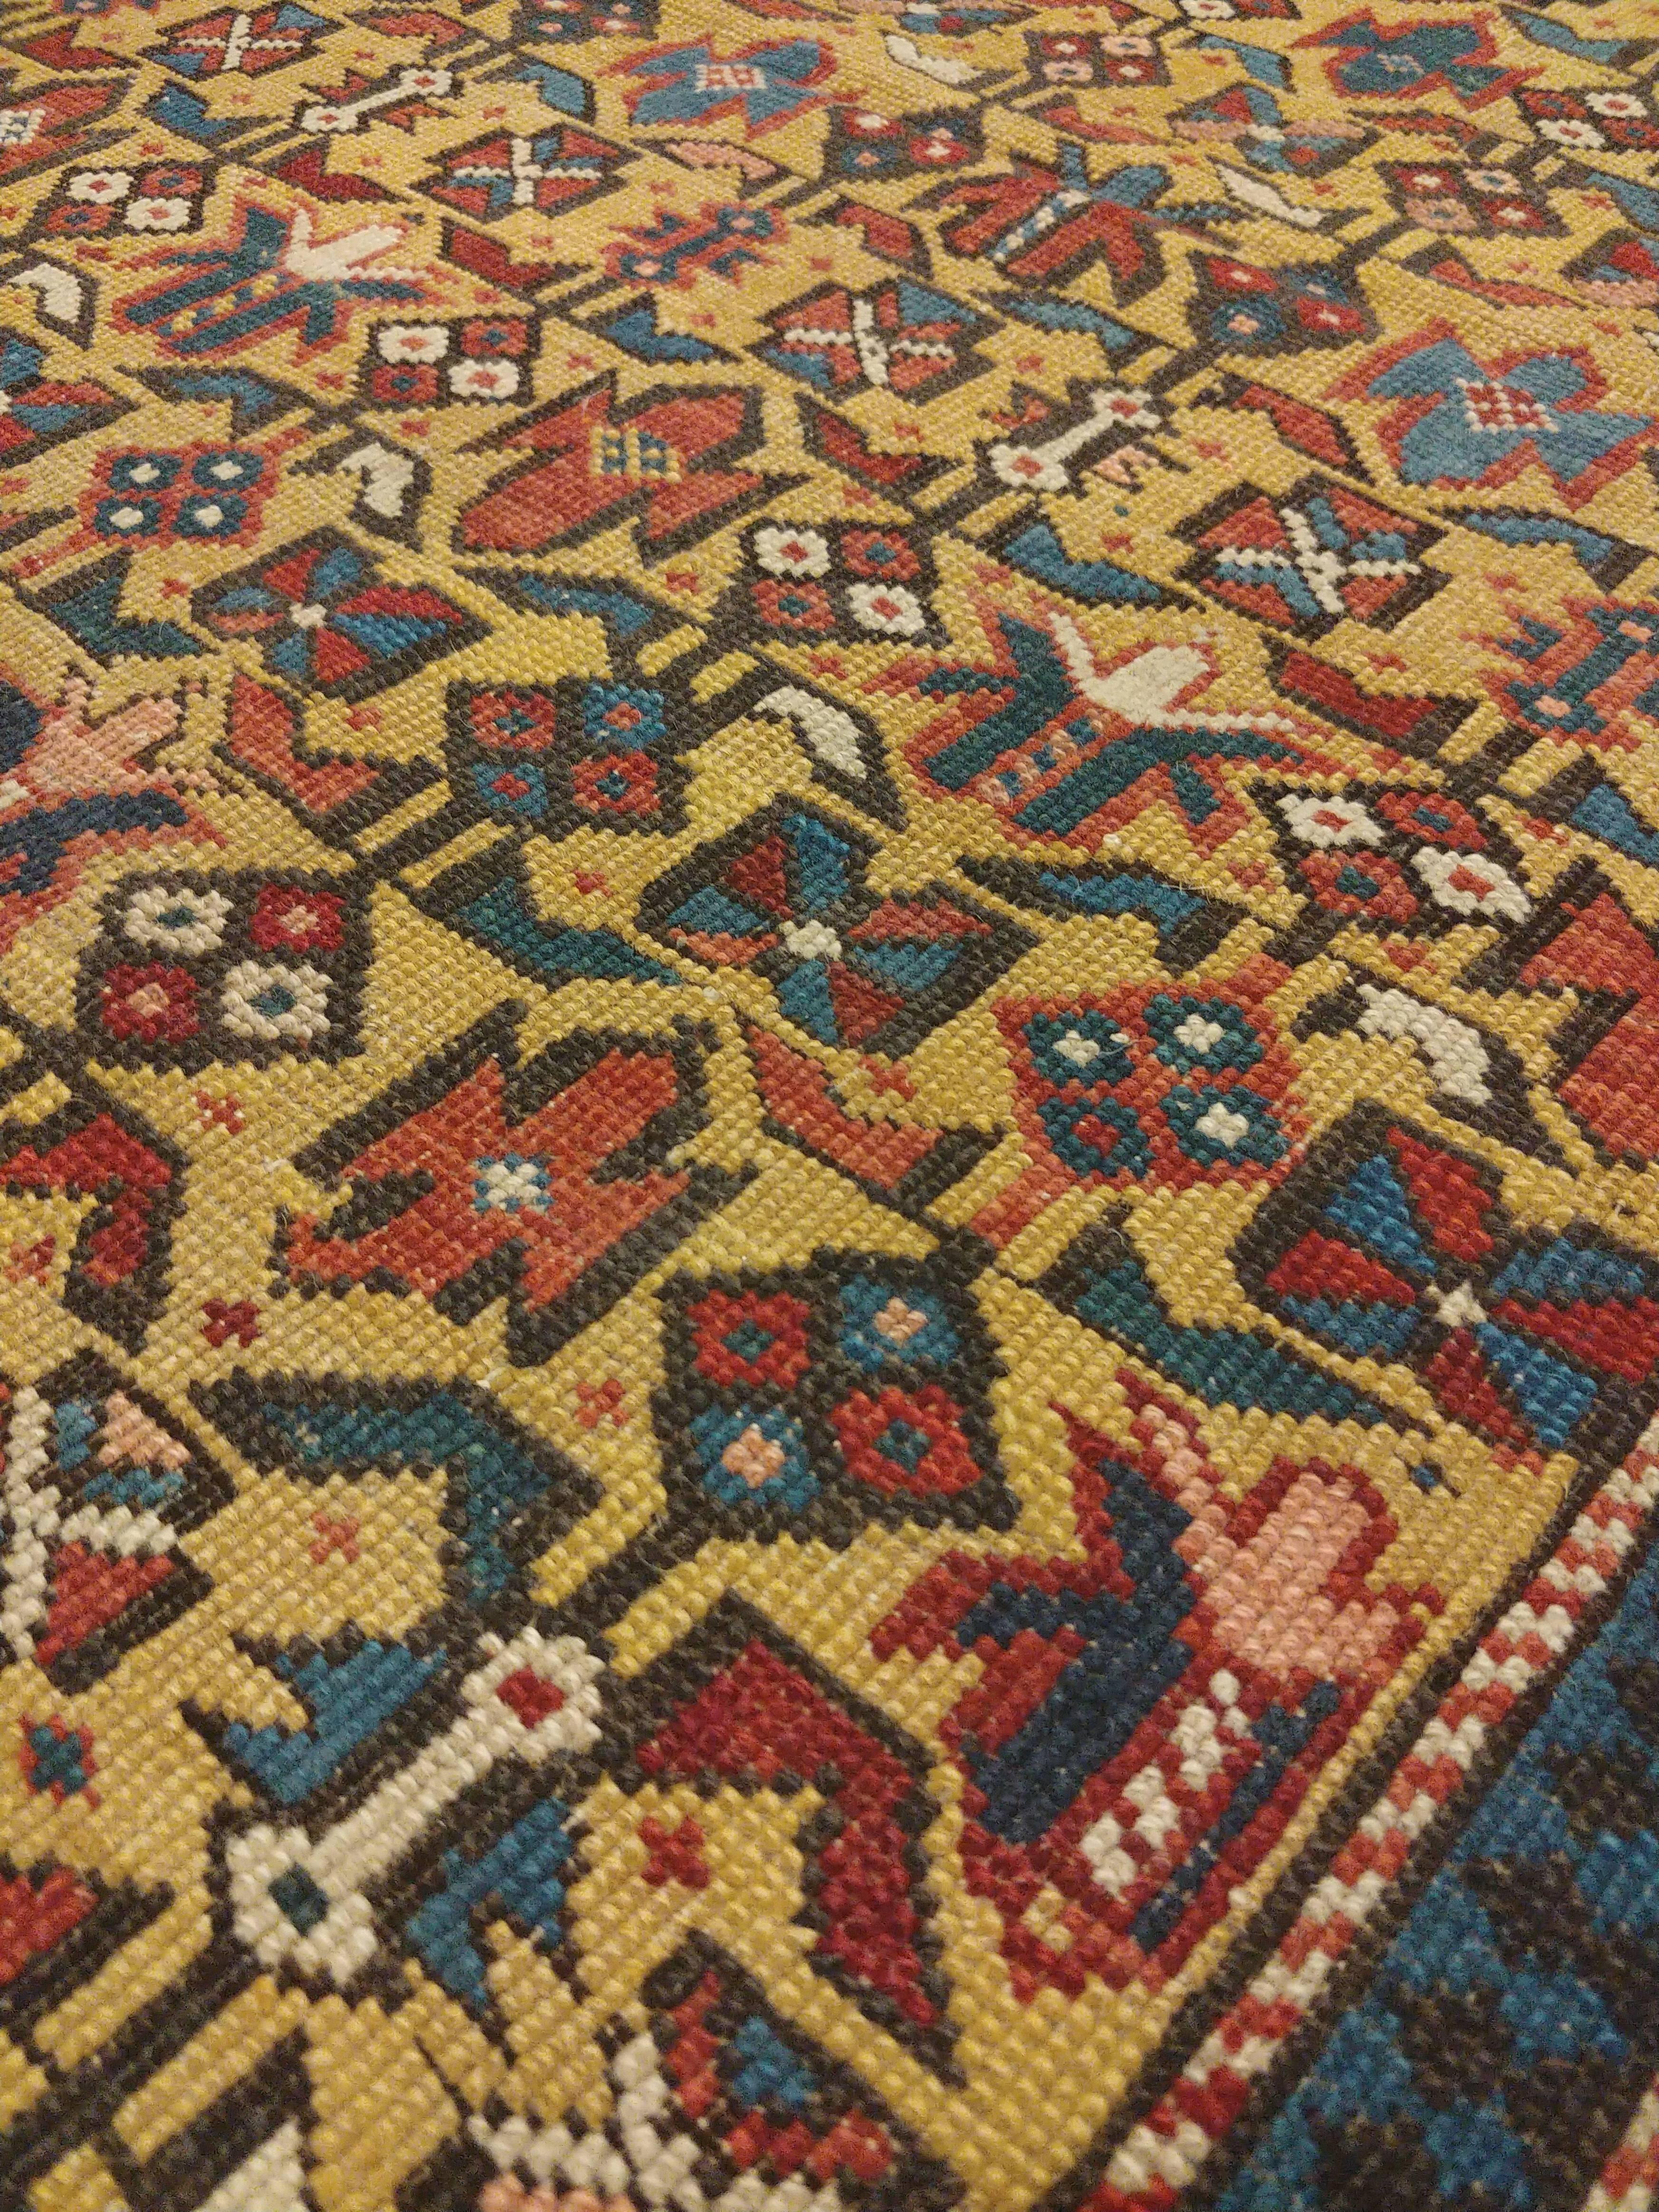 reproduction navajo rugs